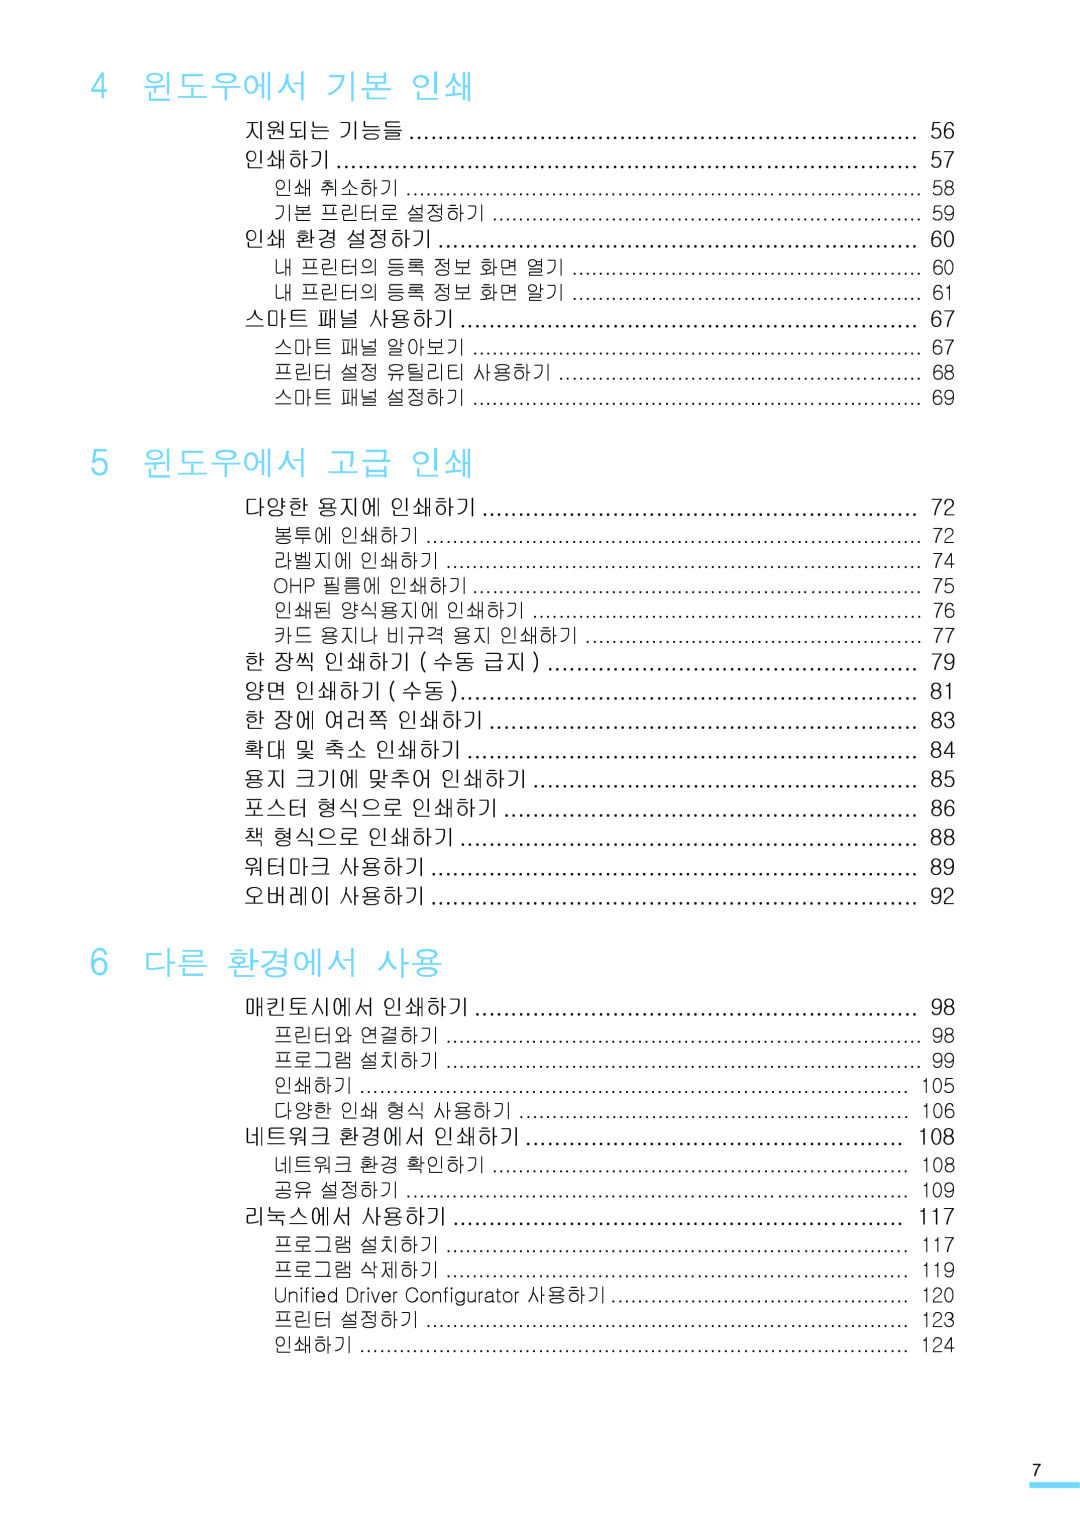 Samsung ML-2571N manual 윈도우에서 기본 인쇄, 윈도우에서 고급 인쇄, 다른 환경에서 사용 